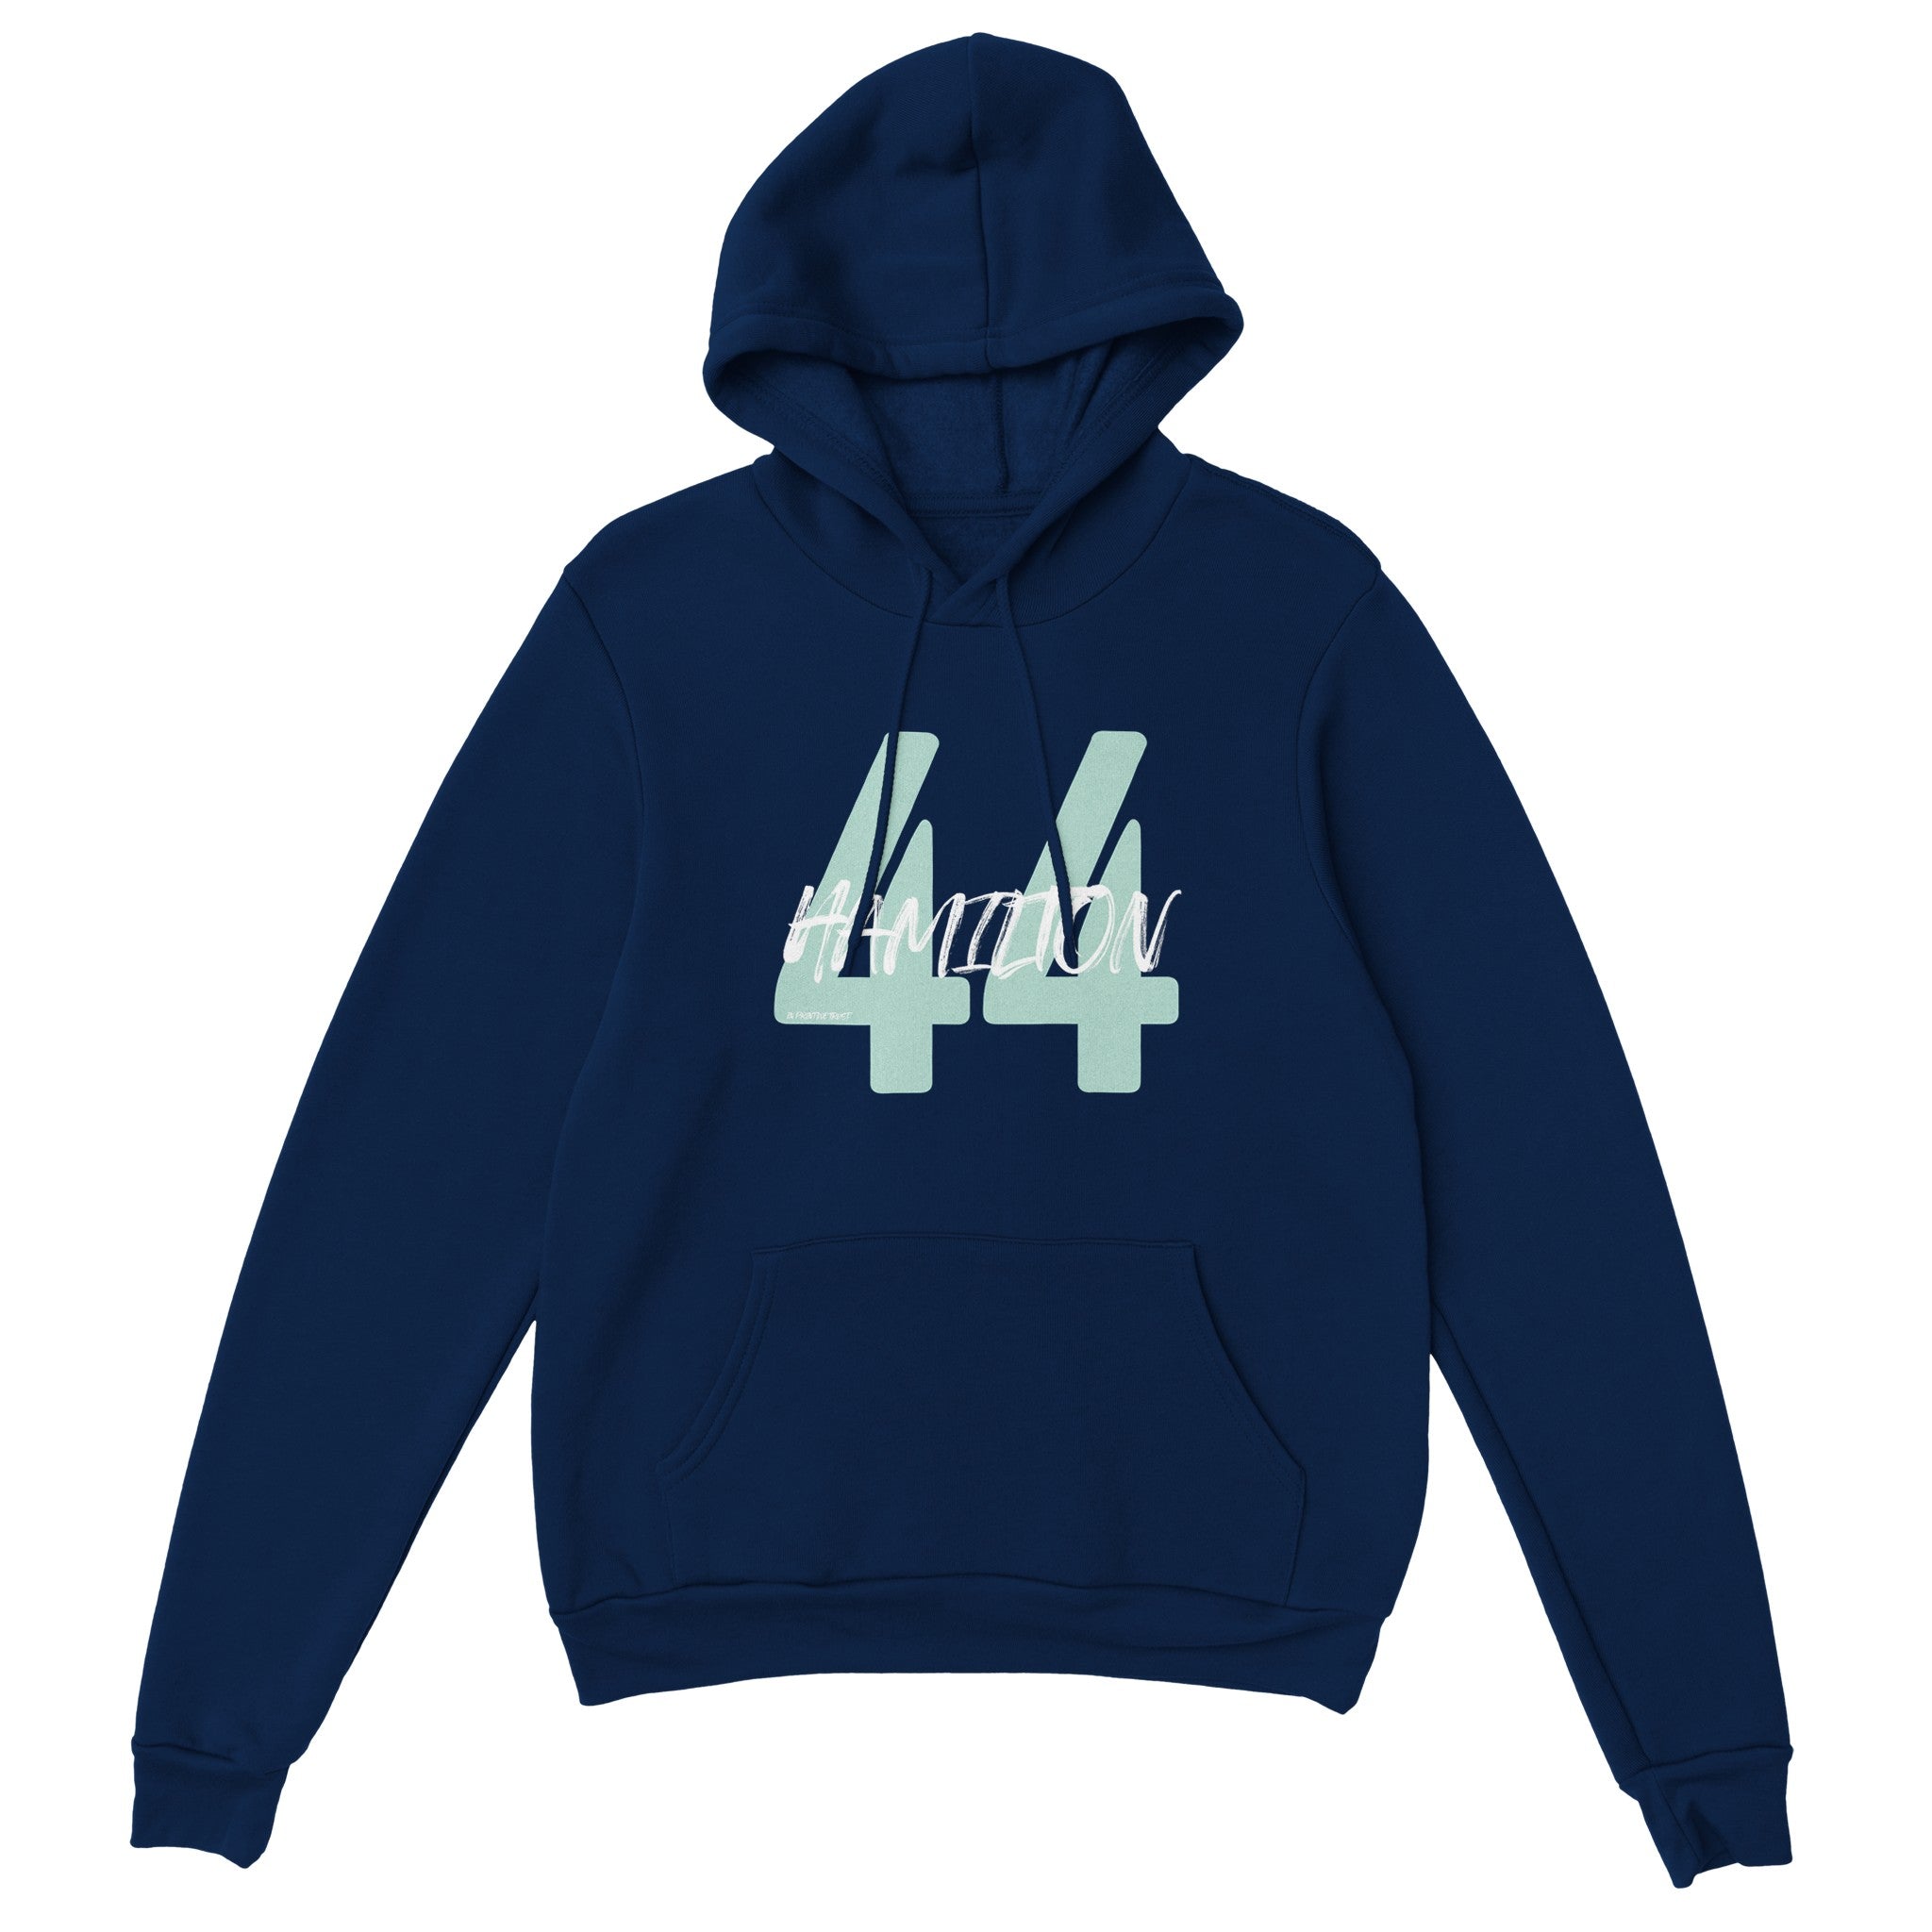 'Hamilton 44' hoodie - In Print We Trust